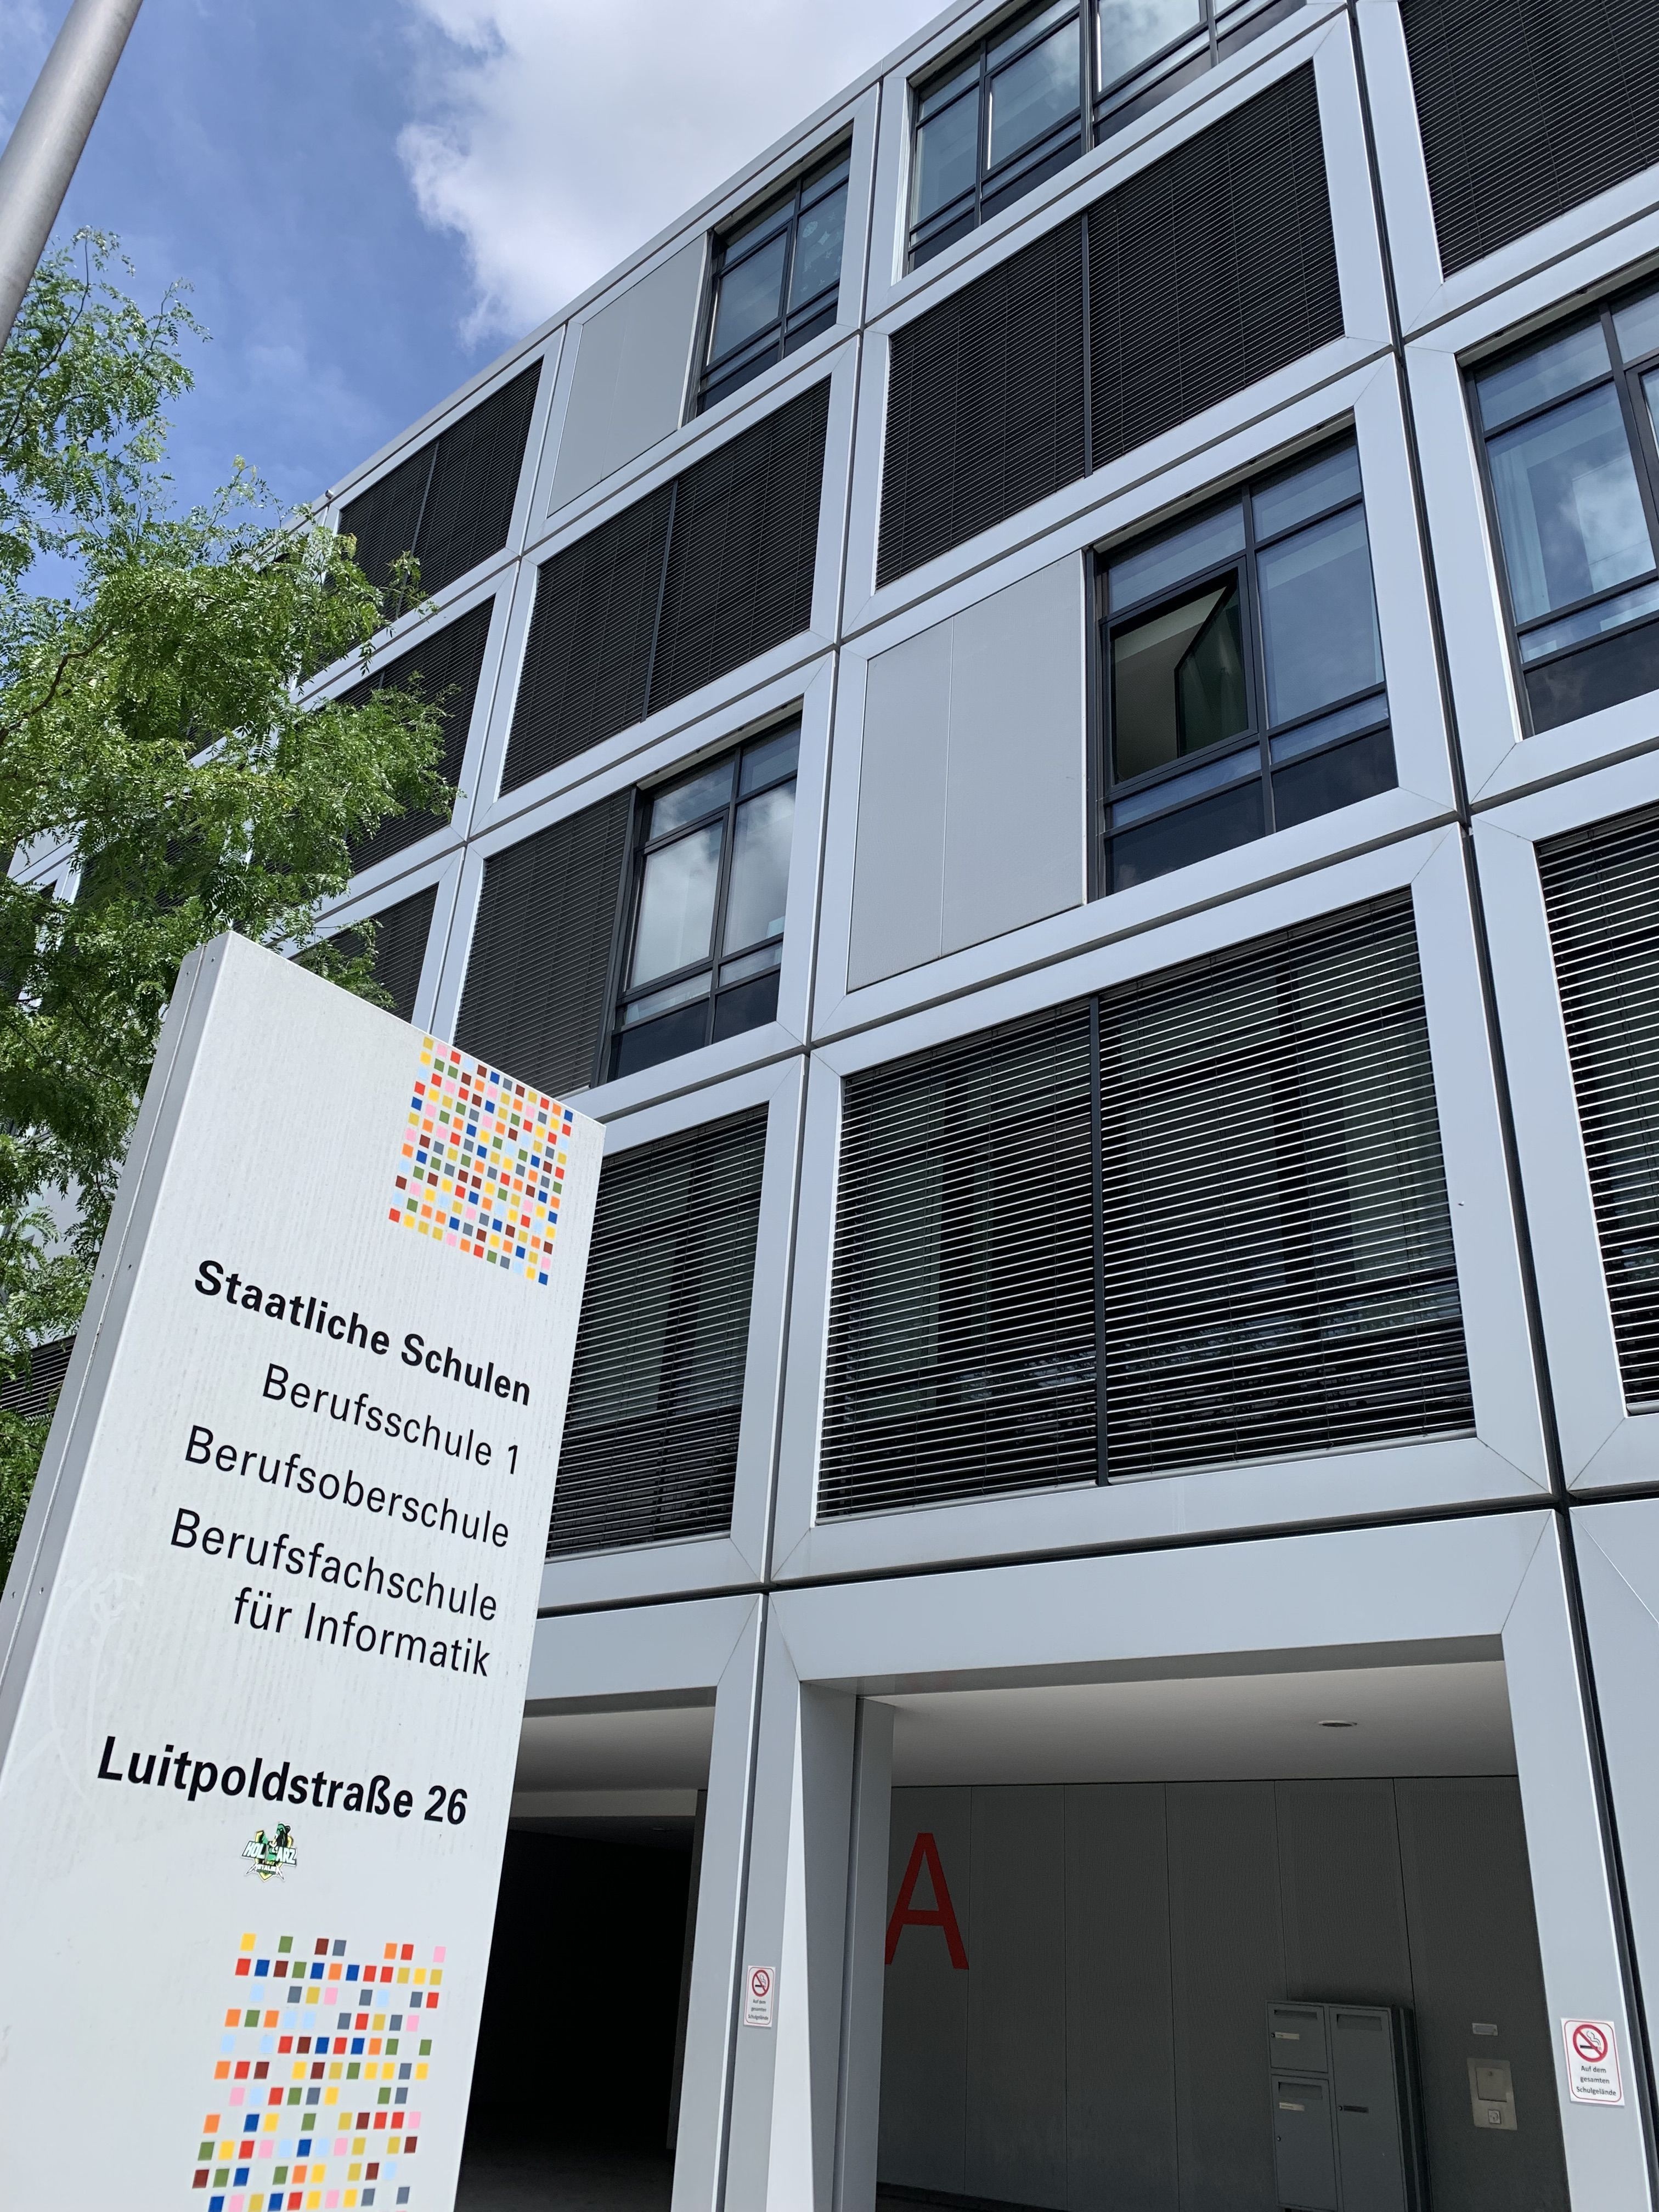 Es ist ein Gebäudeteil der Berufsschule 1, Luitpoldstraße 26 in 84034 Landshut zu sehen. Im linken Vordergrund ist eine Stele mit den Schulbezeichnungen sowie der Adresse.